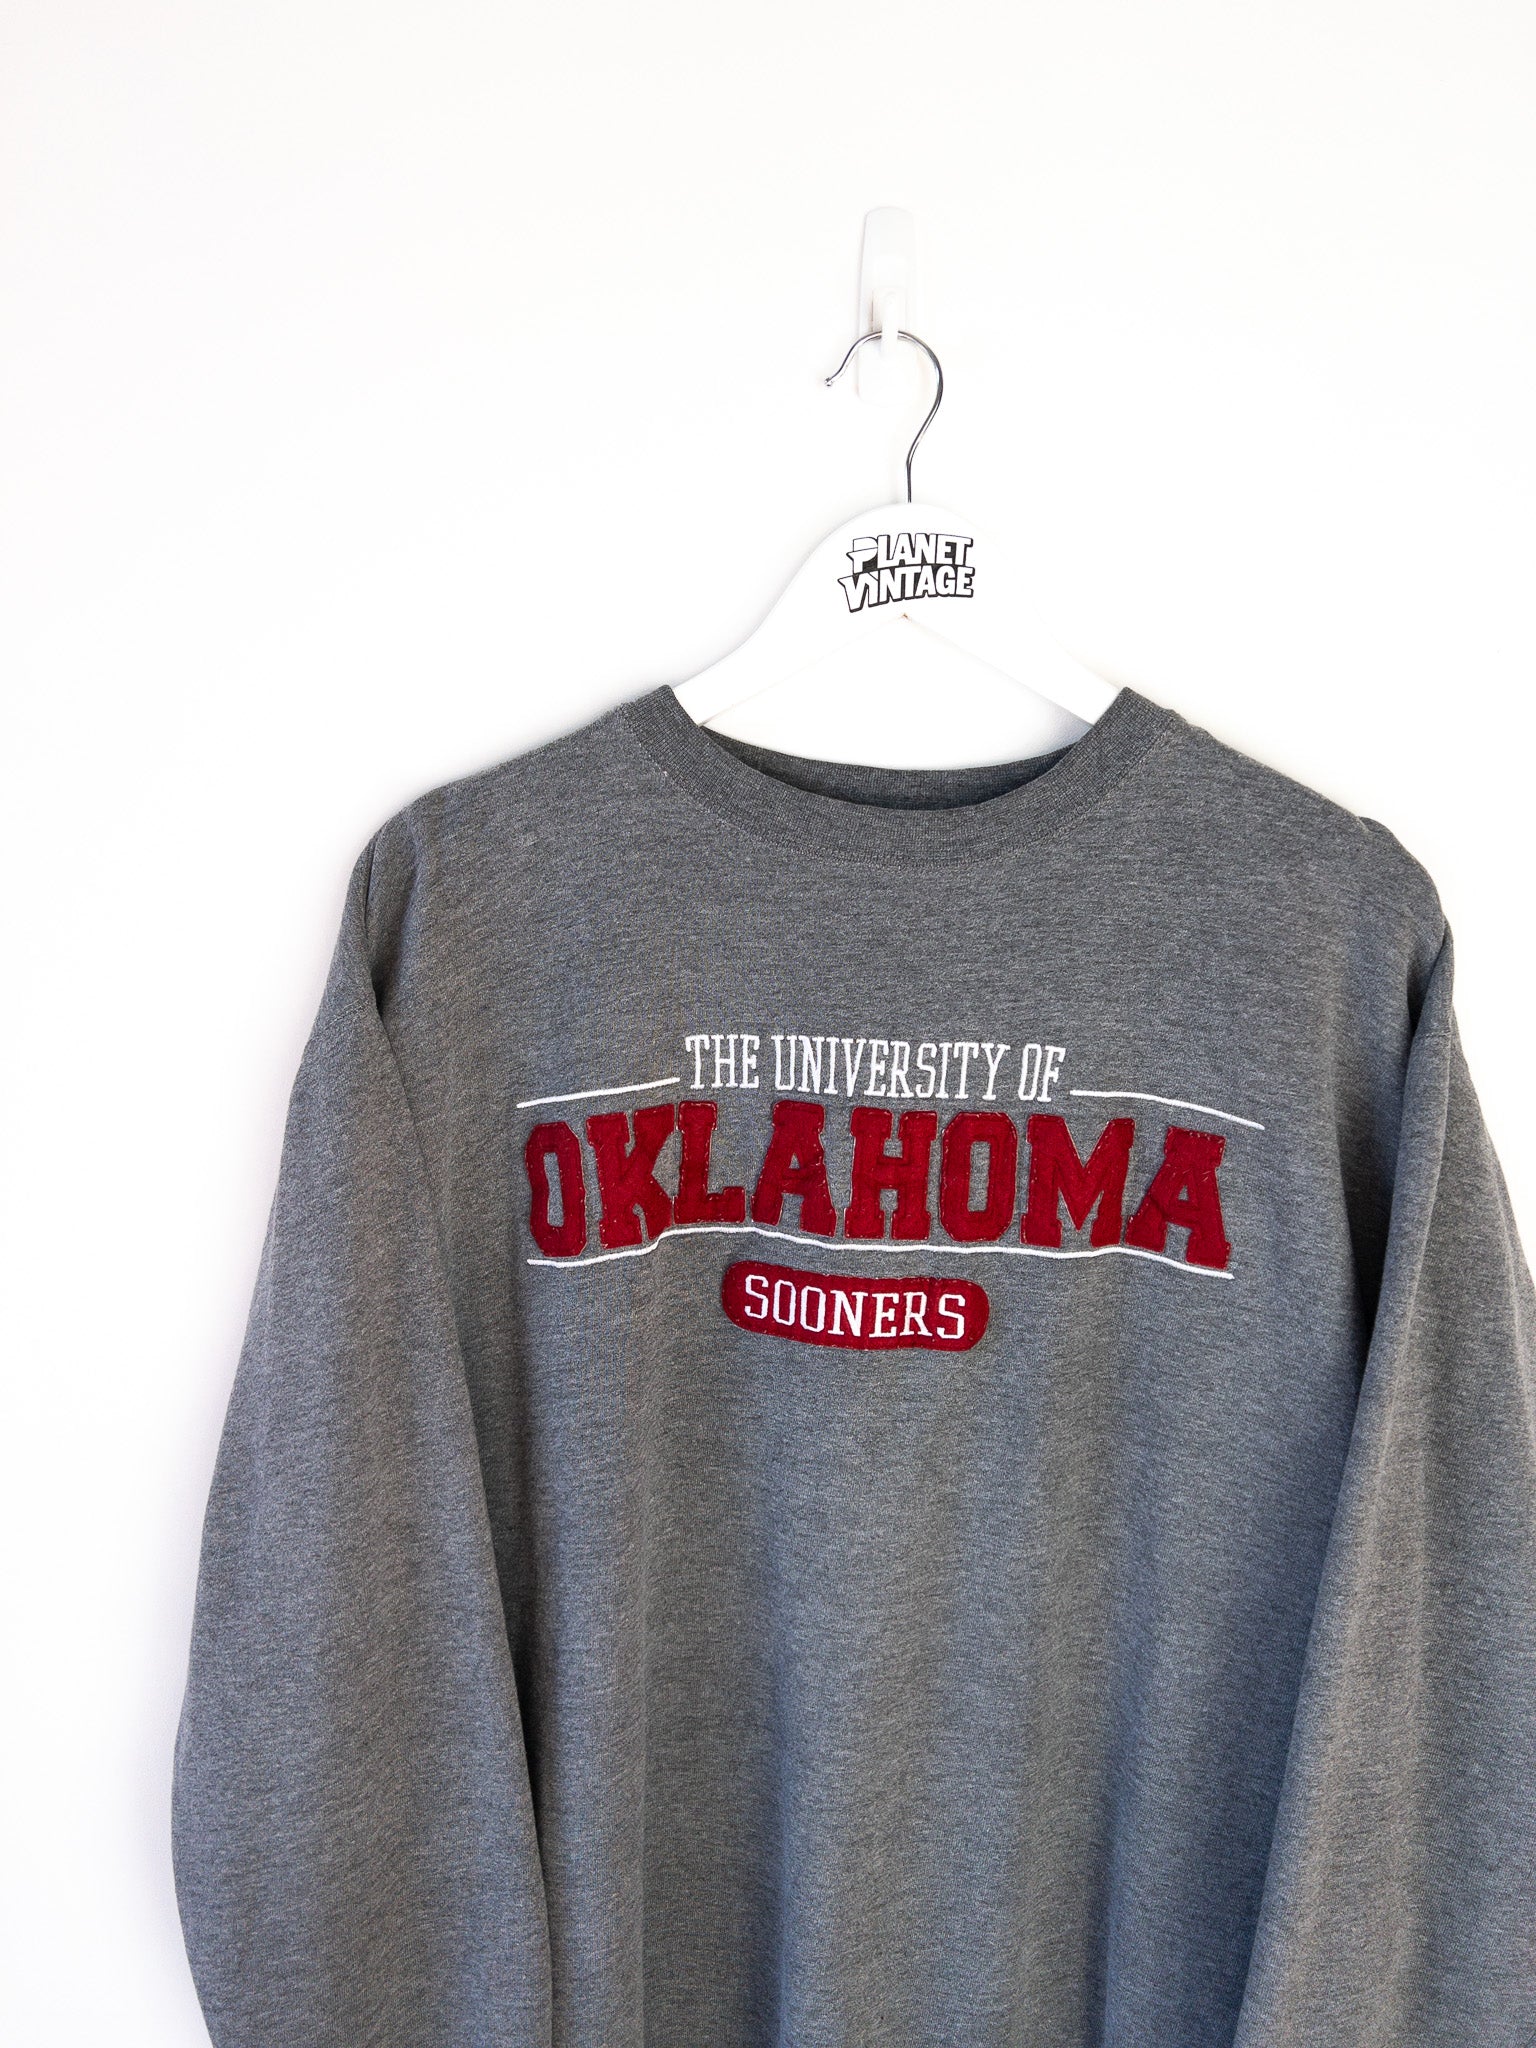 Vintage Oklahoma Sooners Sweatshirt (L)